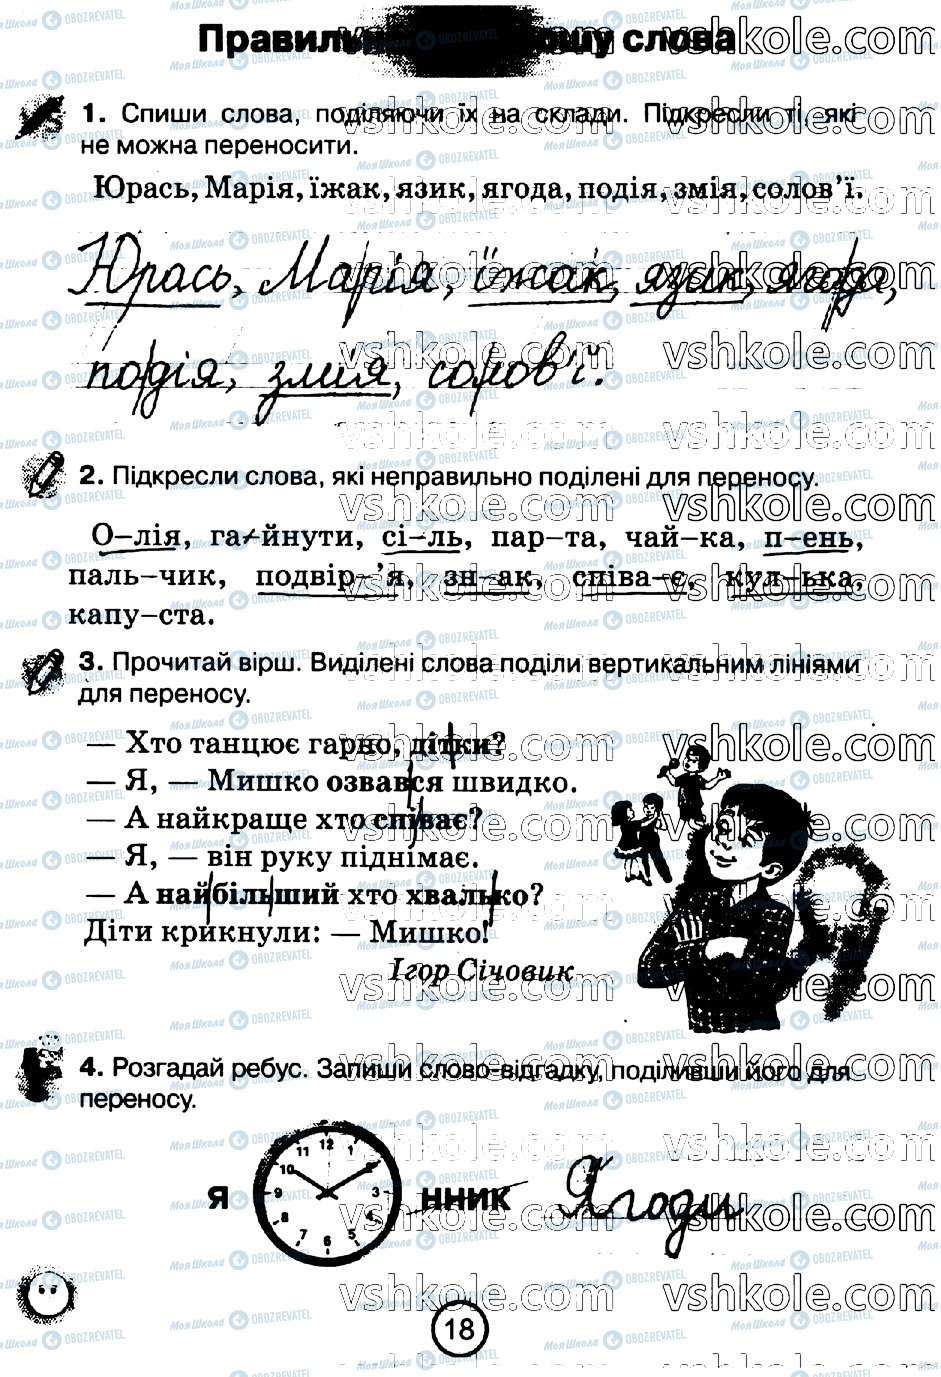 ГДЗ Укр мова 2 класс страница стр18